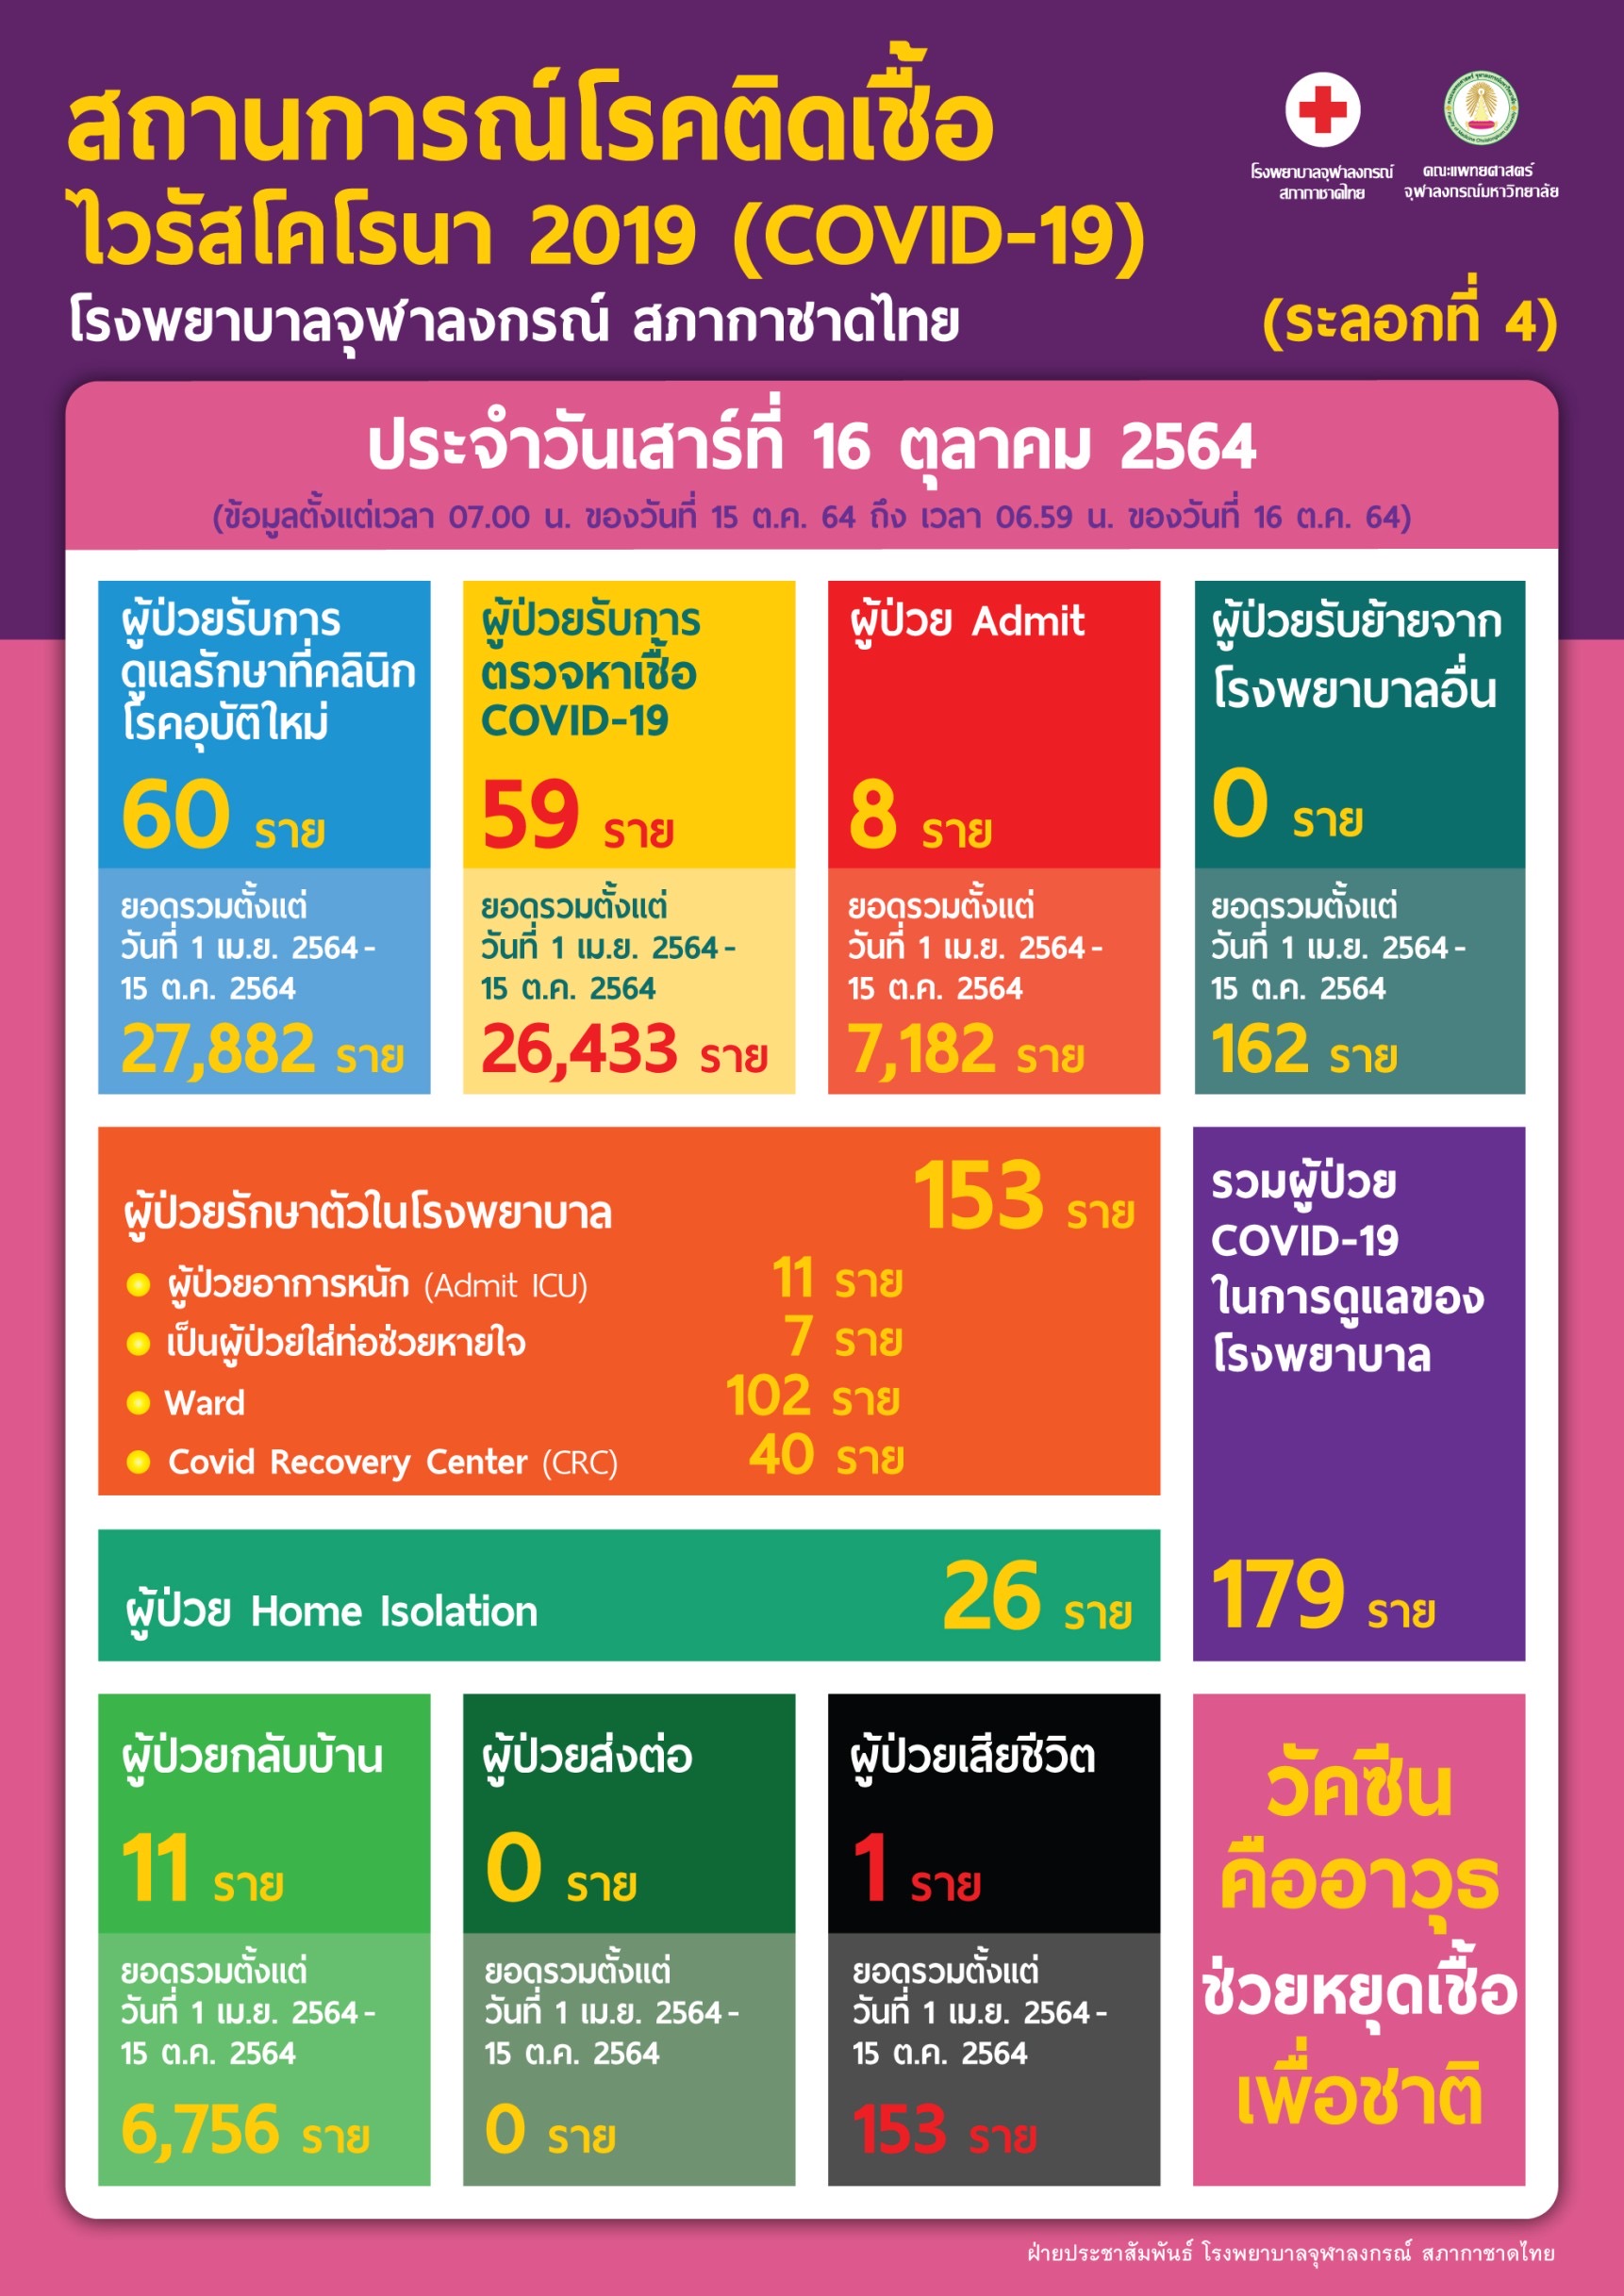 สถานการณ์โรคติดเชื้อไวรัสโคโรนา 2019 (COVID-19) (ระลอกที่ 4) โรงพยาบาลจุฬาลงกรณ์ สภากาชาดไทย ประจำวันเสาร์ที่ 16 ตุลาคม 2564